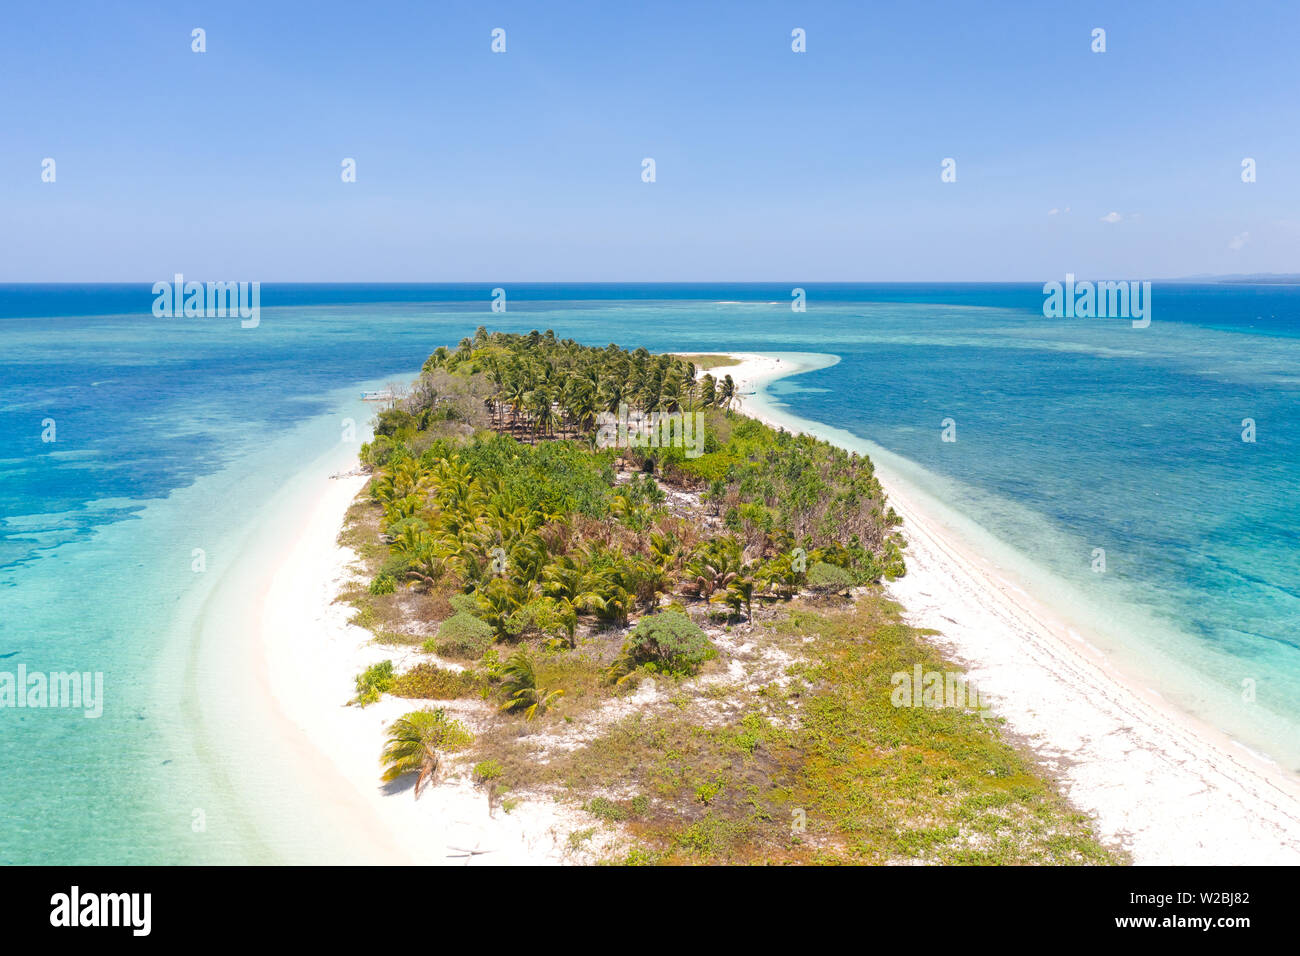 Canimeran île tropicale. Plage de sable blanc sur une île déserte. Petite île avec palmiers et sable blanc. Banque D'Images